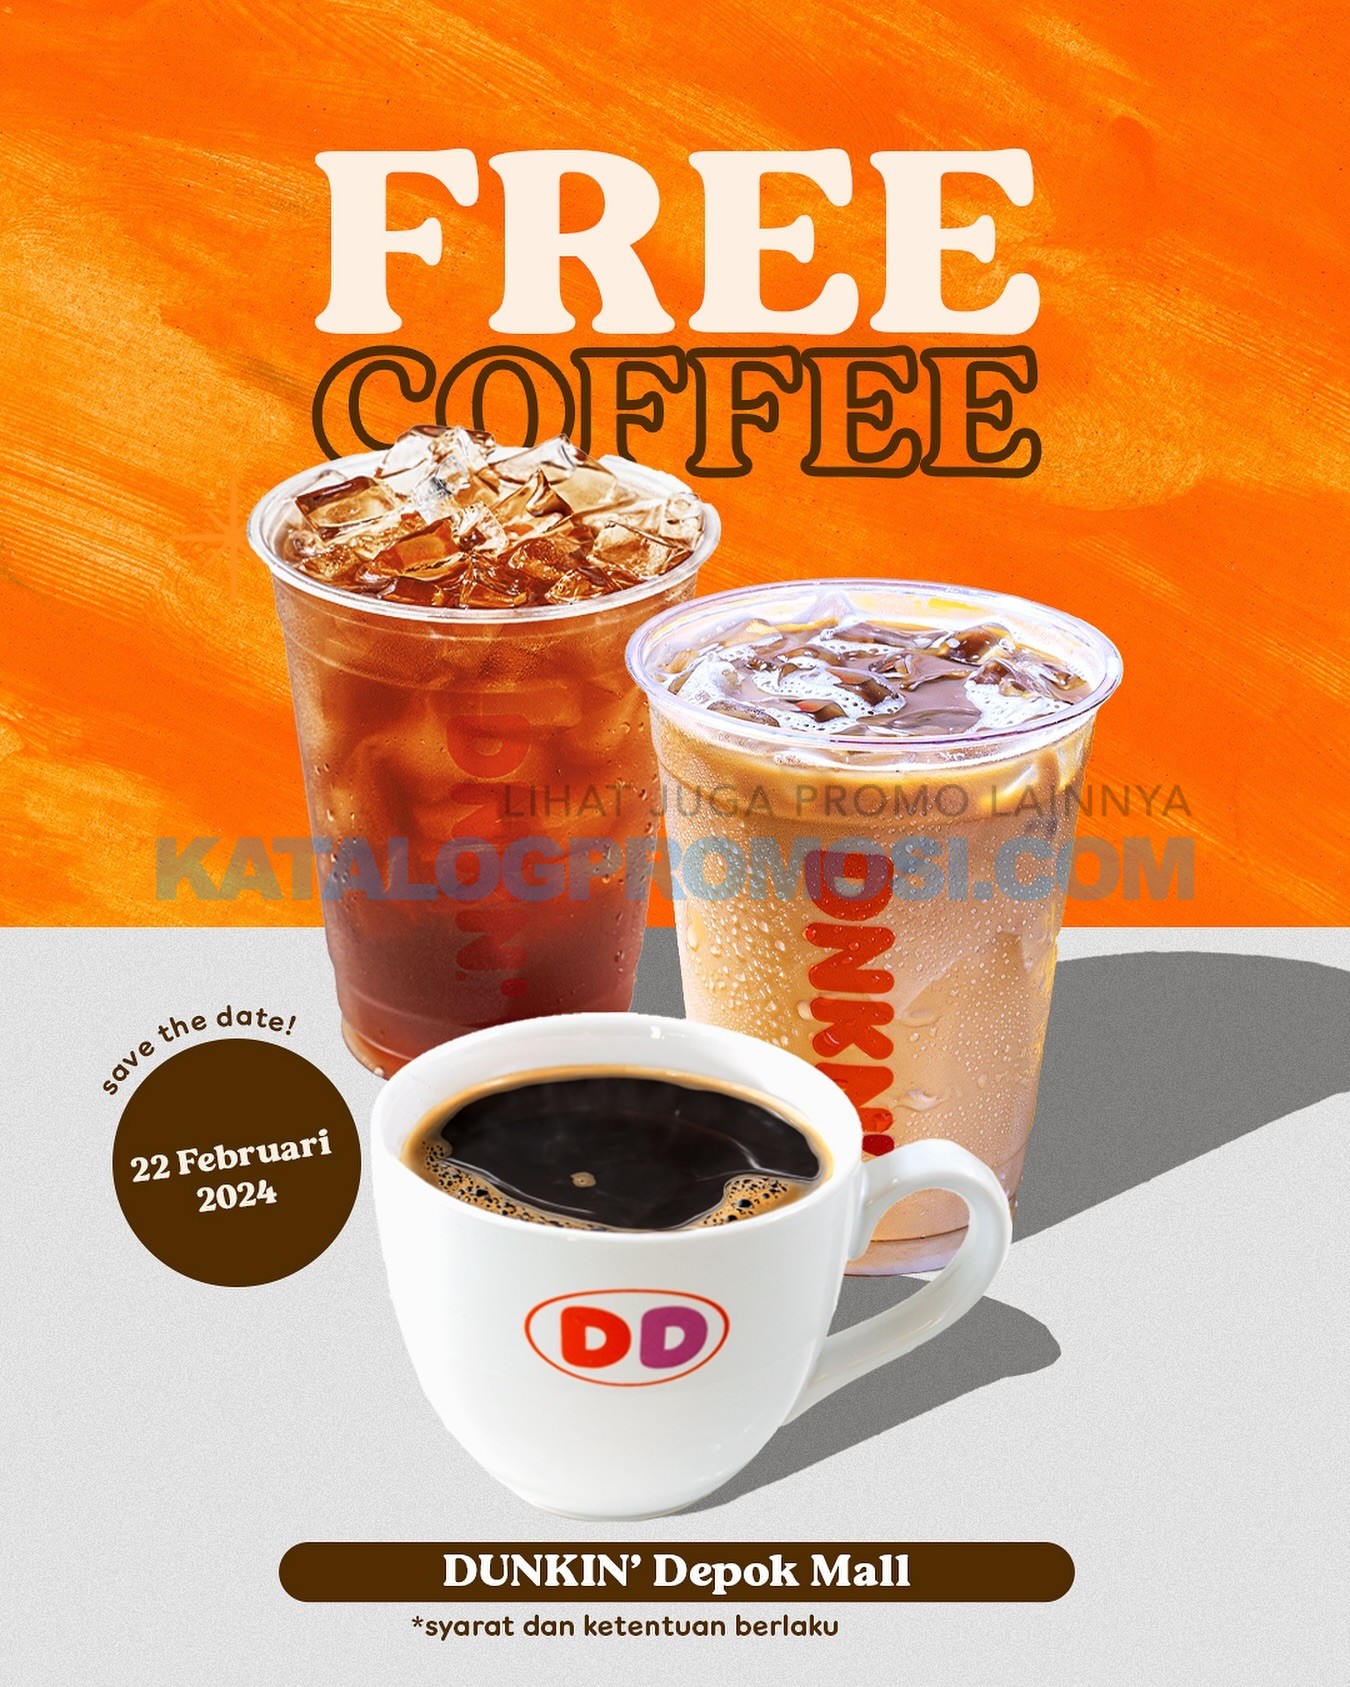 Promo DUNKIN’ DEPOK MALL - dapatkan GRATIS COFFEE* berlaku hanya 1 hari, tanggal 22 Februari 2024